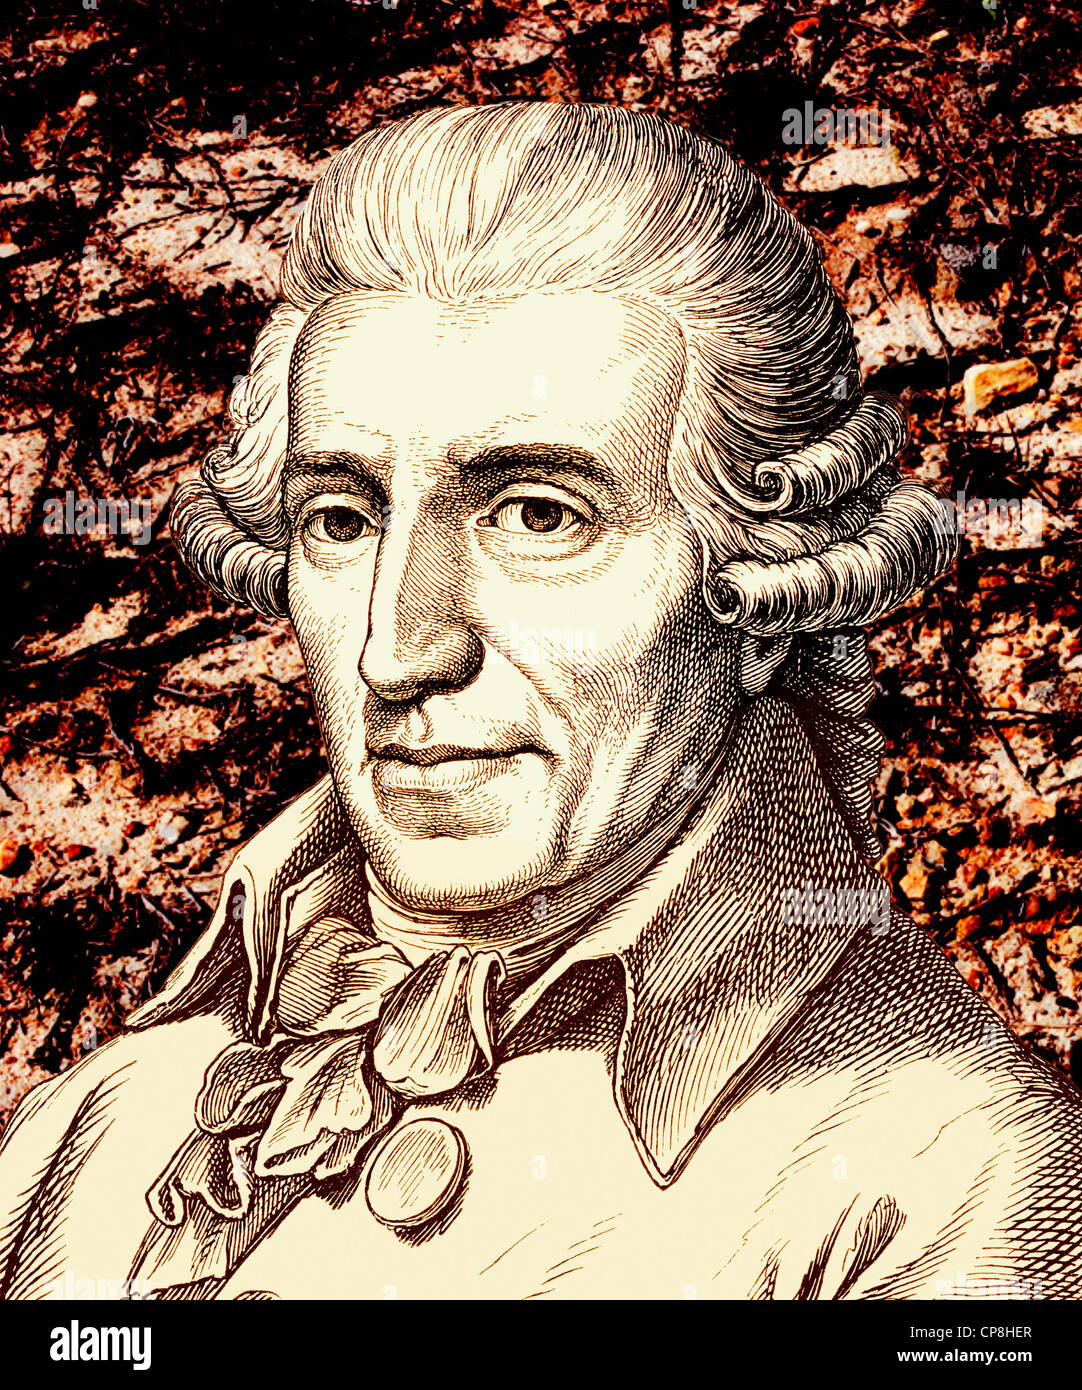 Franz Joseph Haydn, 1732 - 1809, un compositeur autrichien et principal représentant de la musique classique Viennoise, Historische Zeichnun Banque D'Images